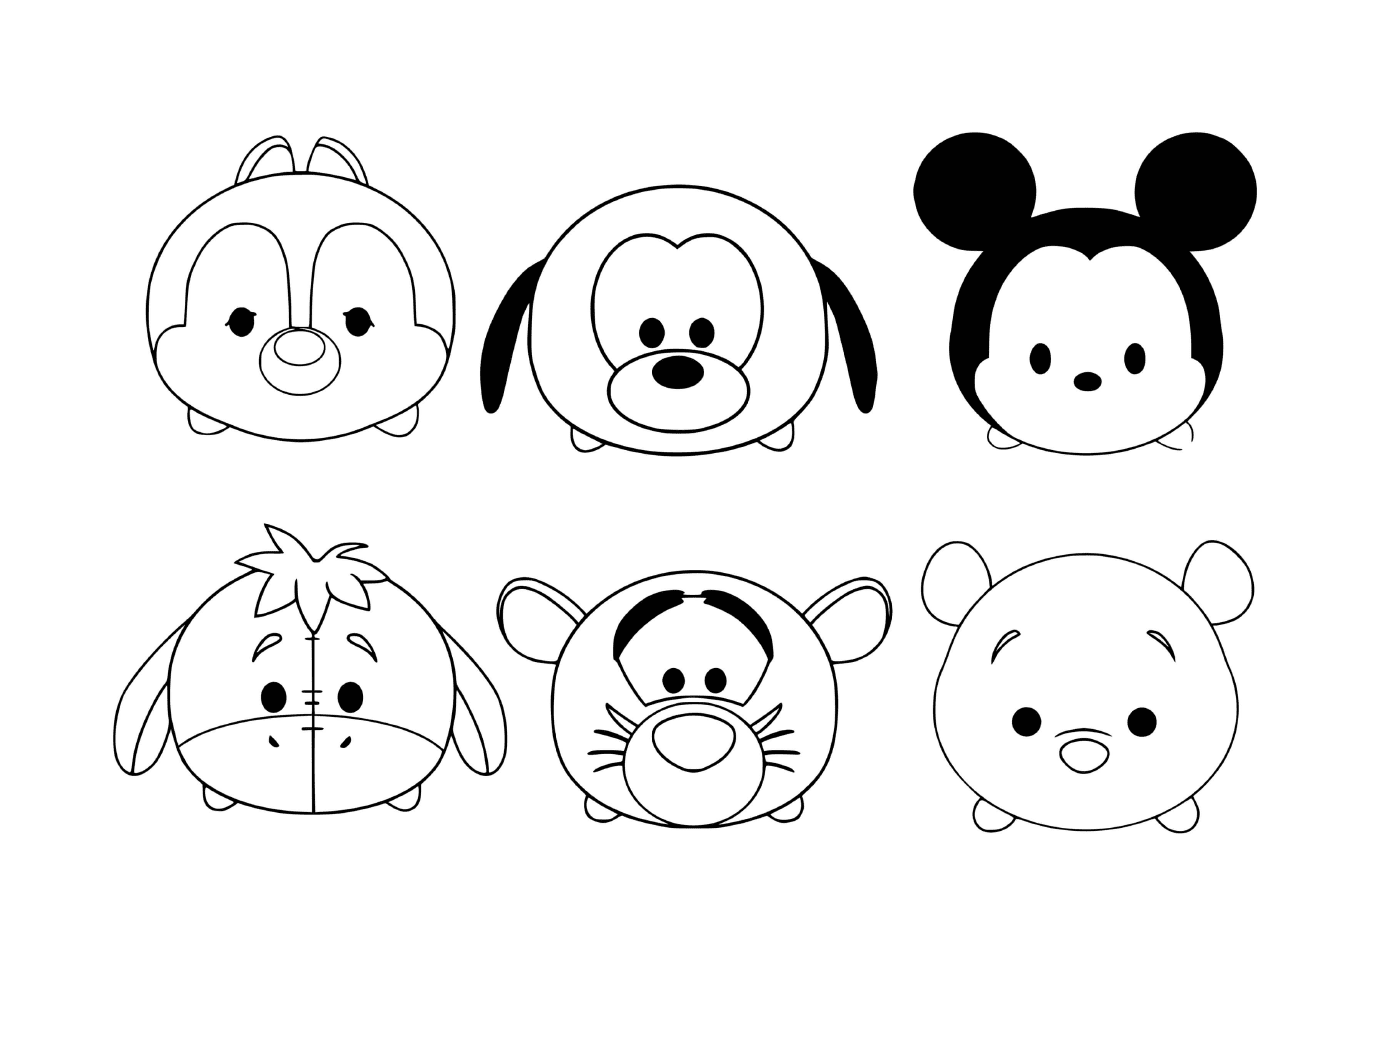  Нарисовать символы Disney Tsume 